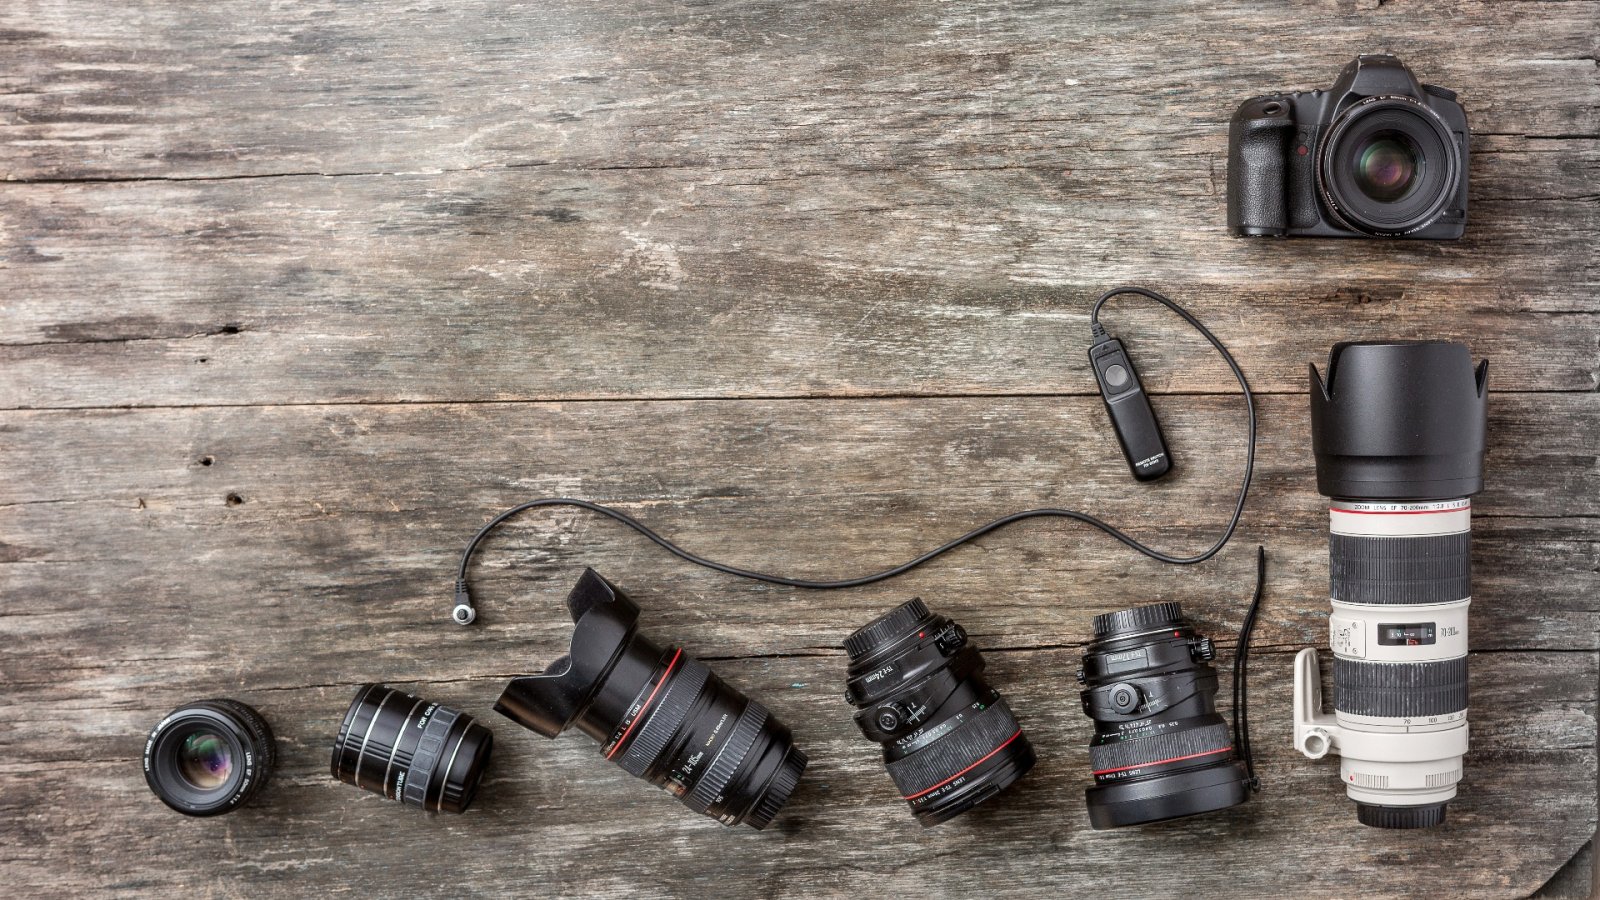 2.000 kameraer: en unik samling af fotokameraer og en klub